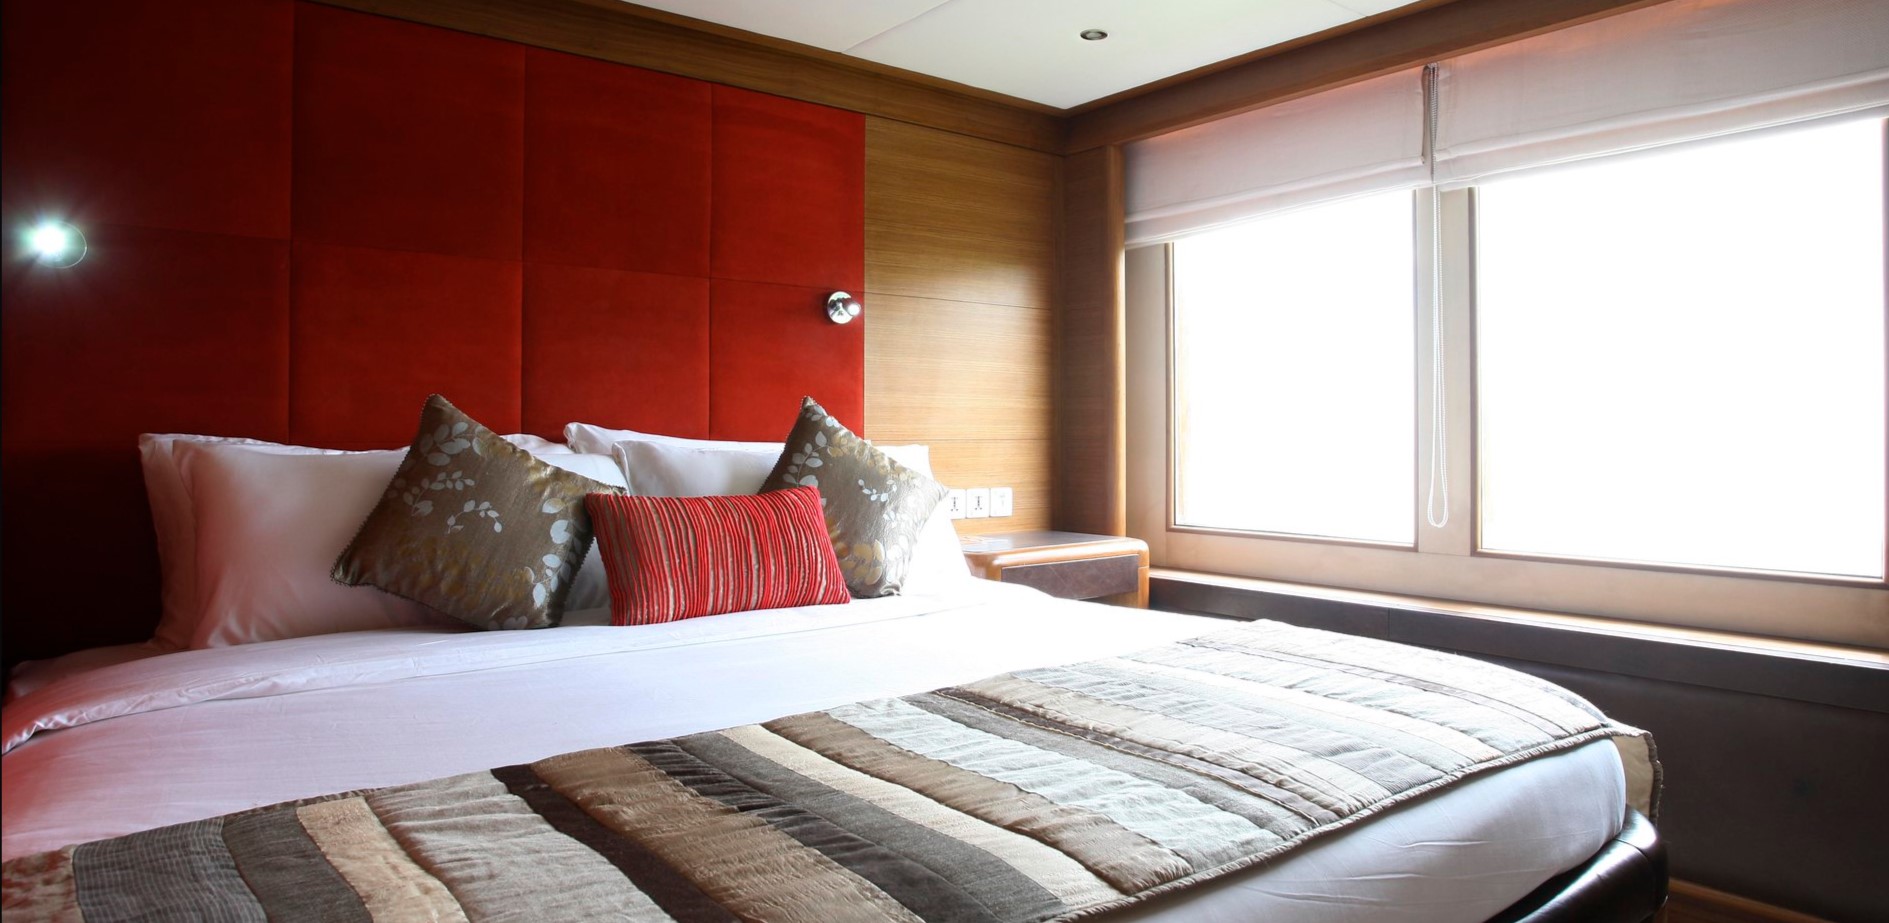 Яркие подушки можно использовать в качестве эффективного интерьерного декора